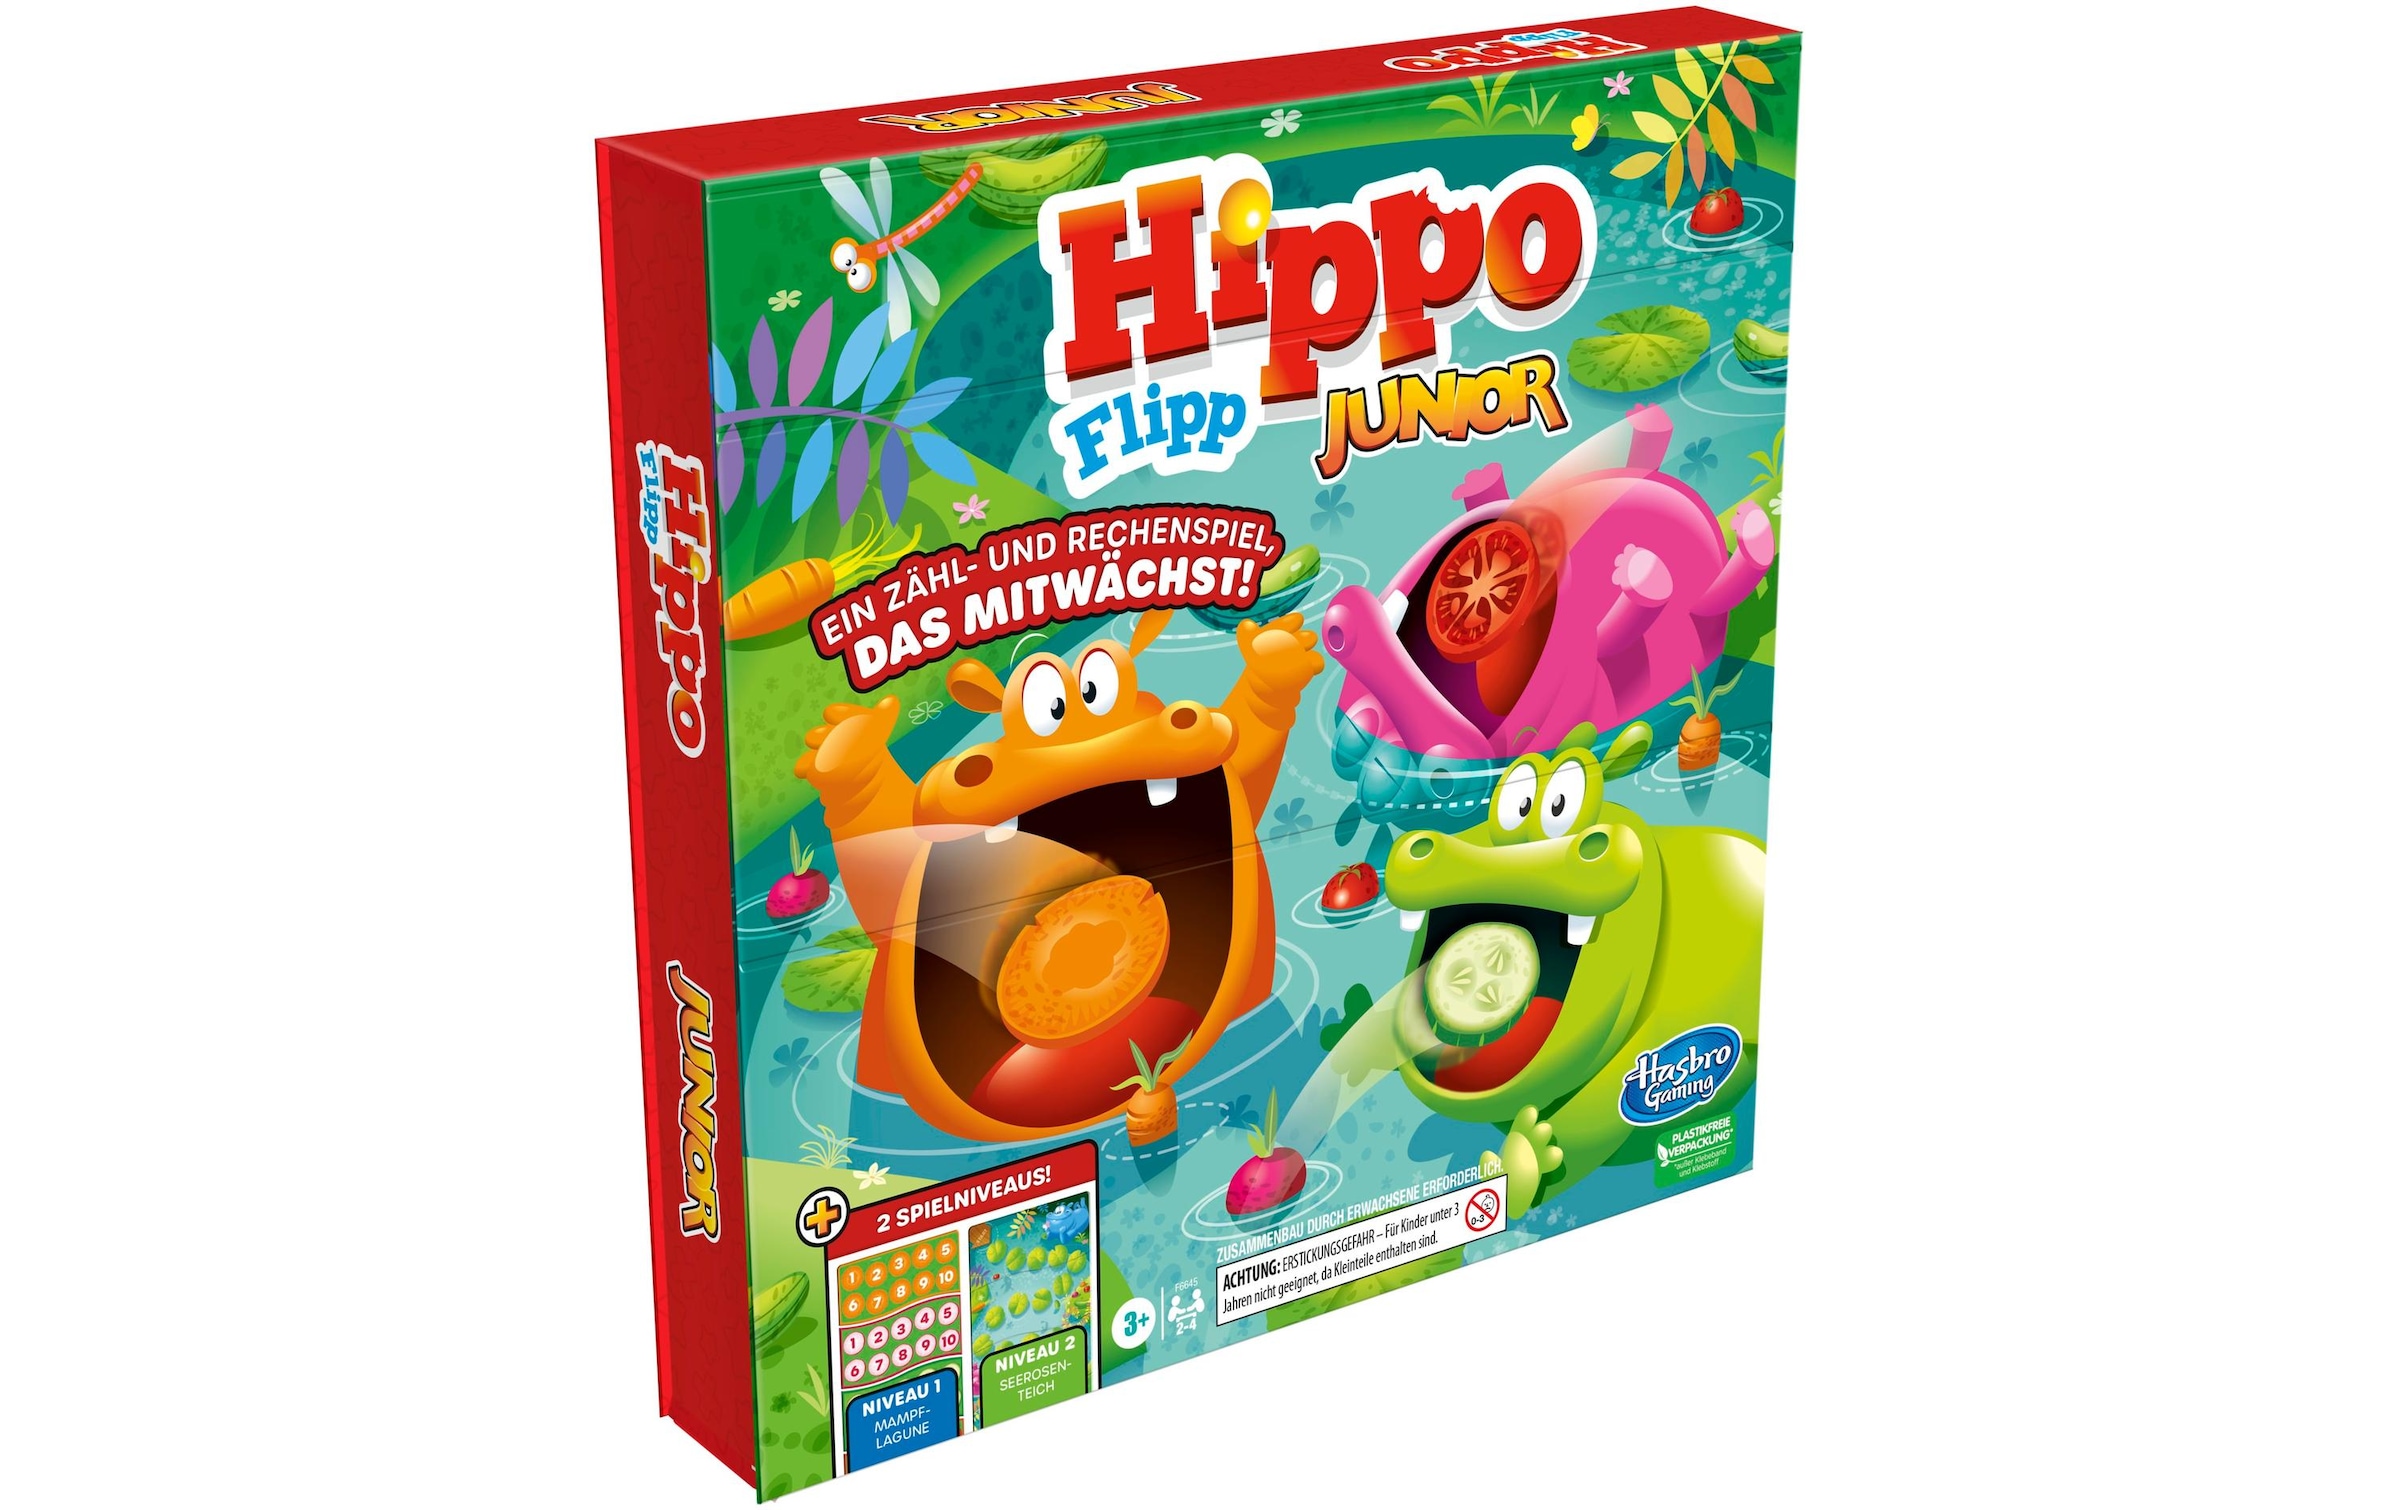 Spiel »Hippo«